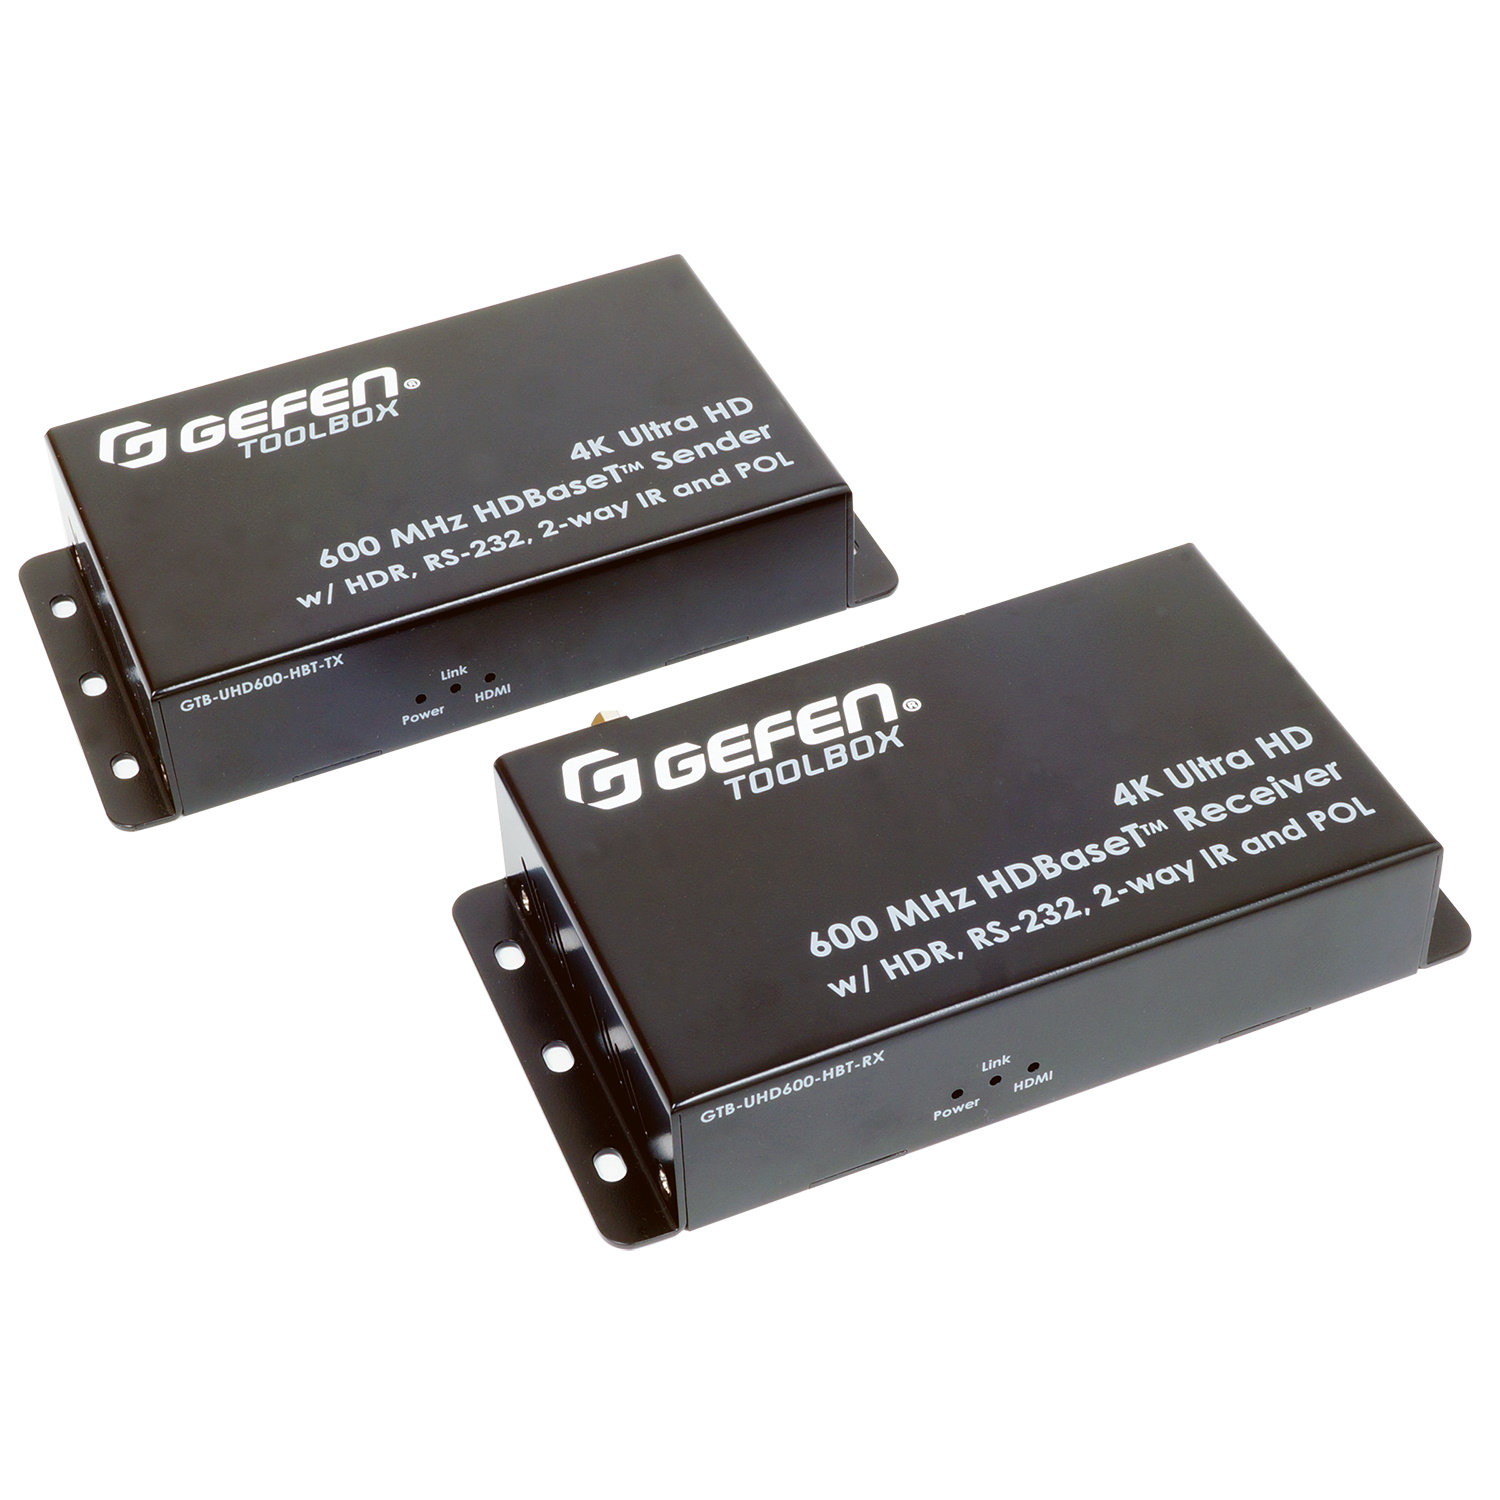 HDMI коммутаторы, разветвители, повторители Gefen GTB-UHD600-HBT